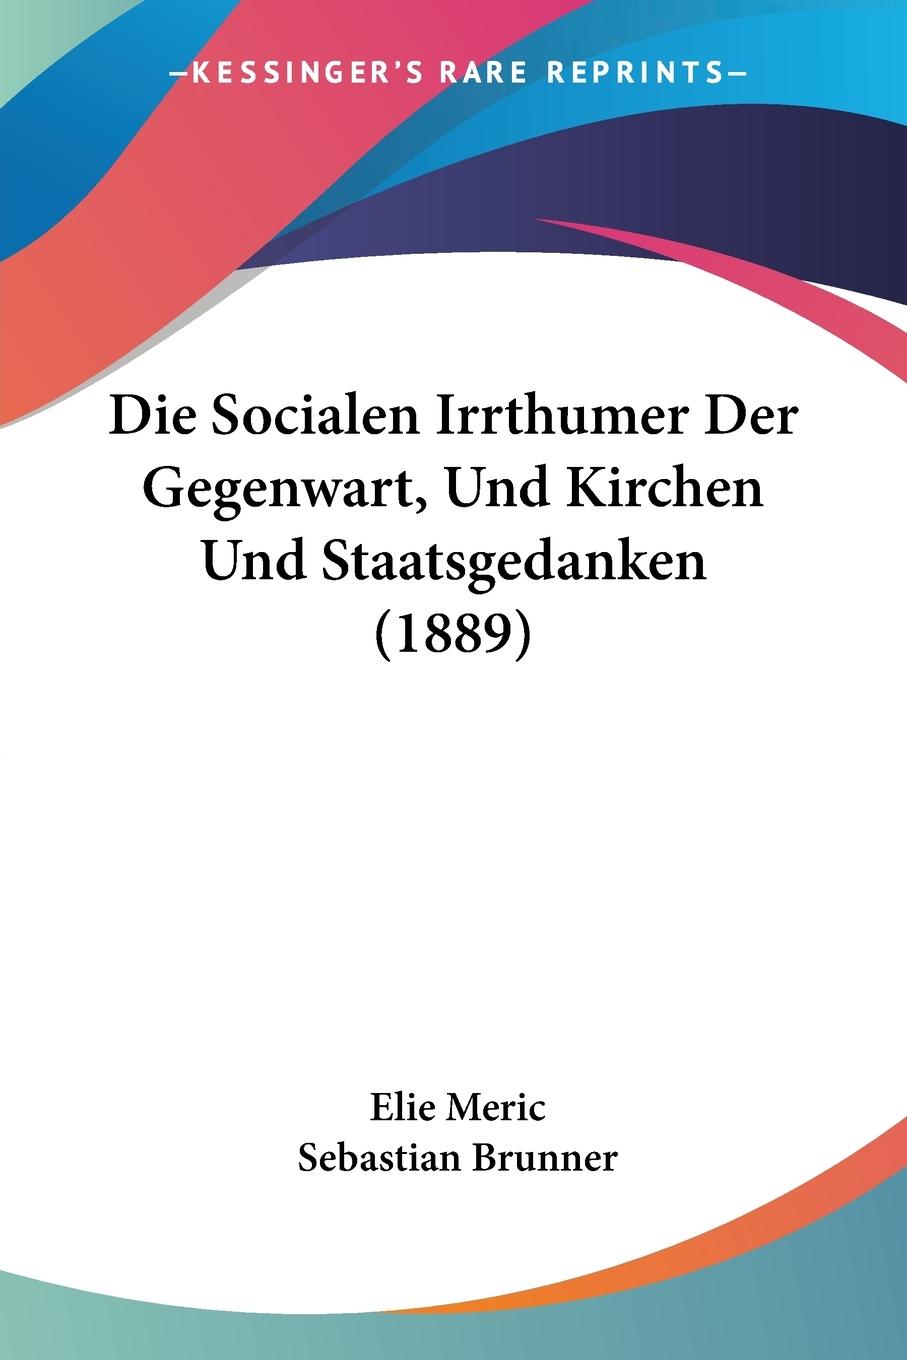 Die Socialen Irrthumer Der Gegenwart, Und Kirchen Und Staatsgedanken (1889) - Meric, Elie Brunner, Sebastian